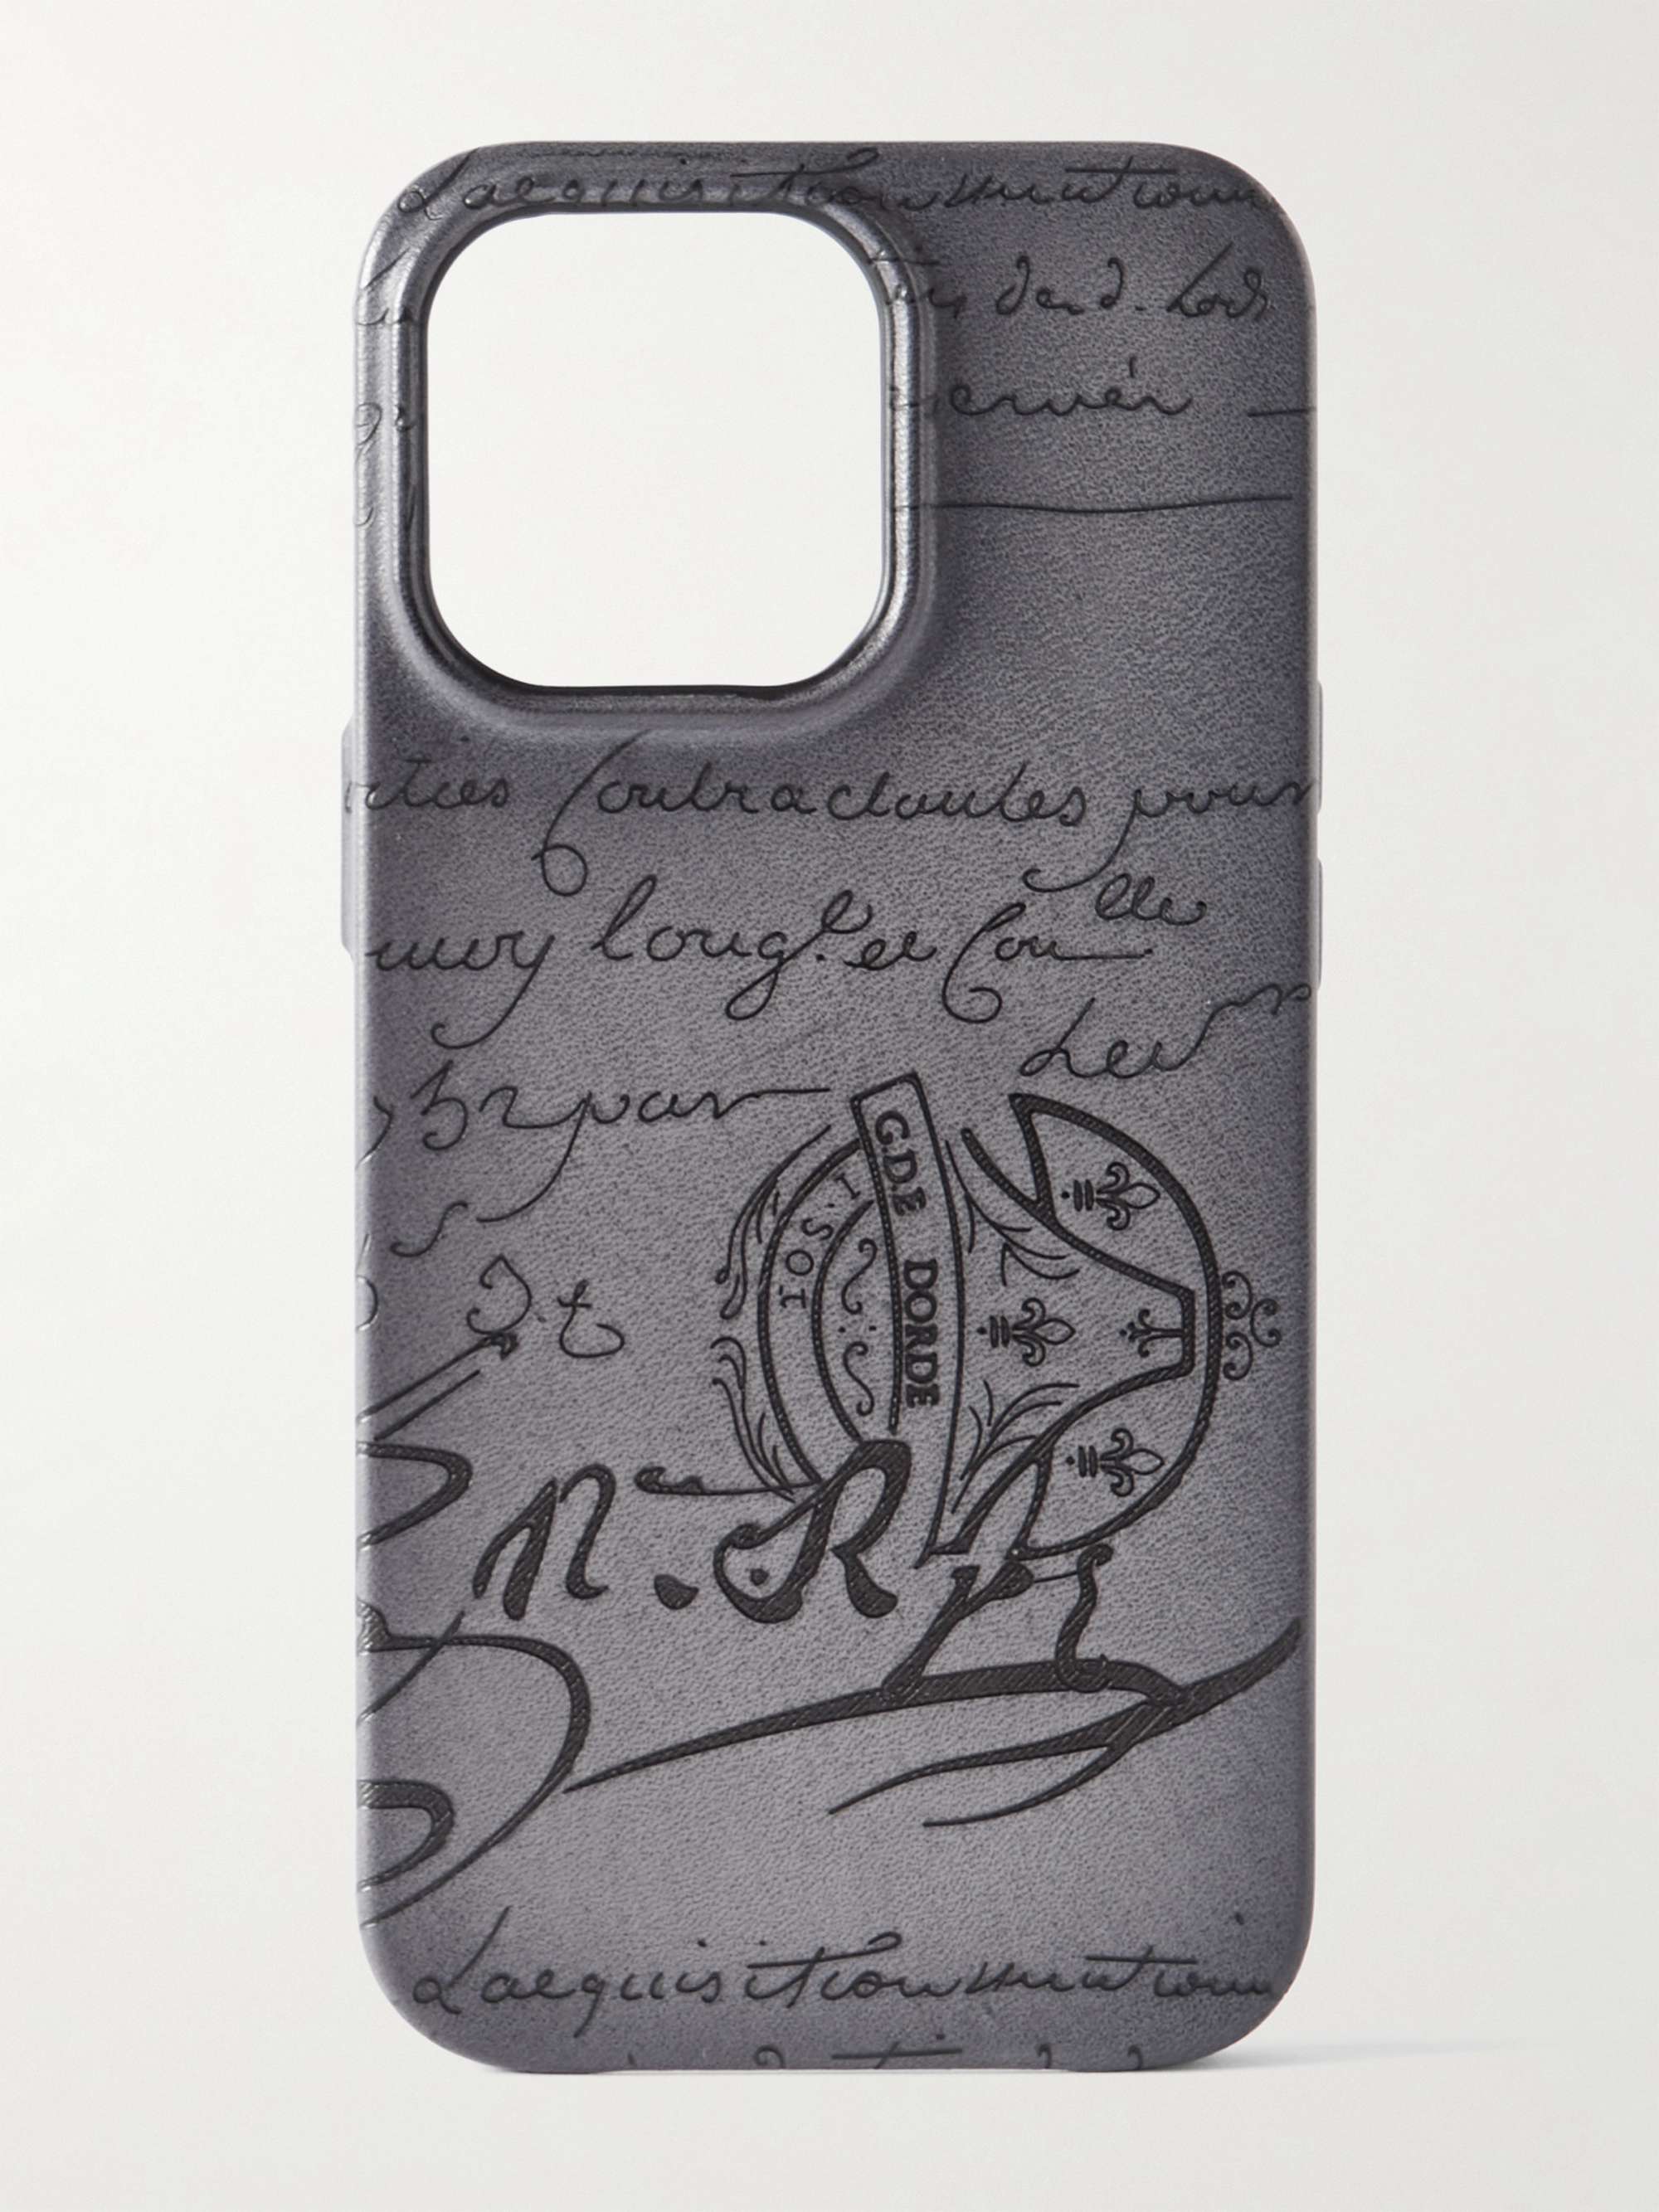 BERLUTI Scritto Venezia Leather iPhone 13 Pro Phone Case